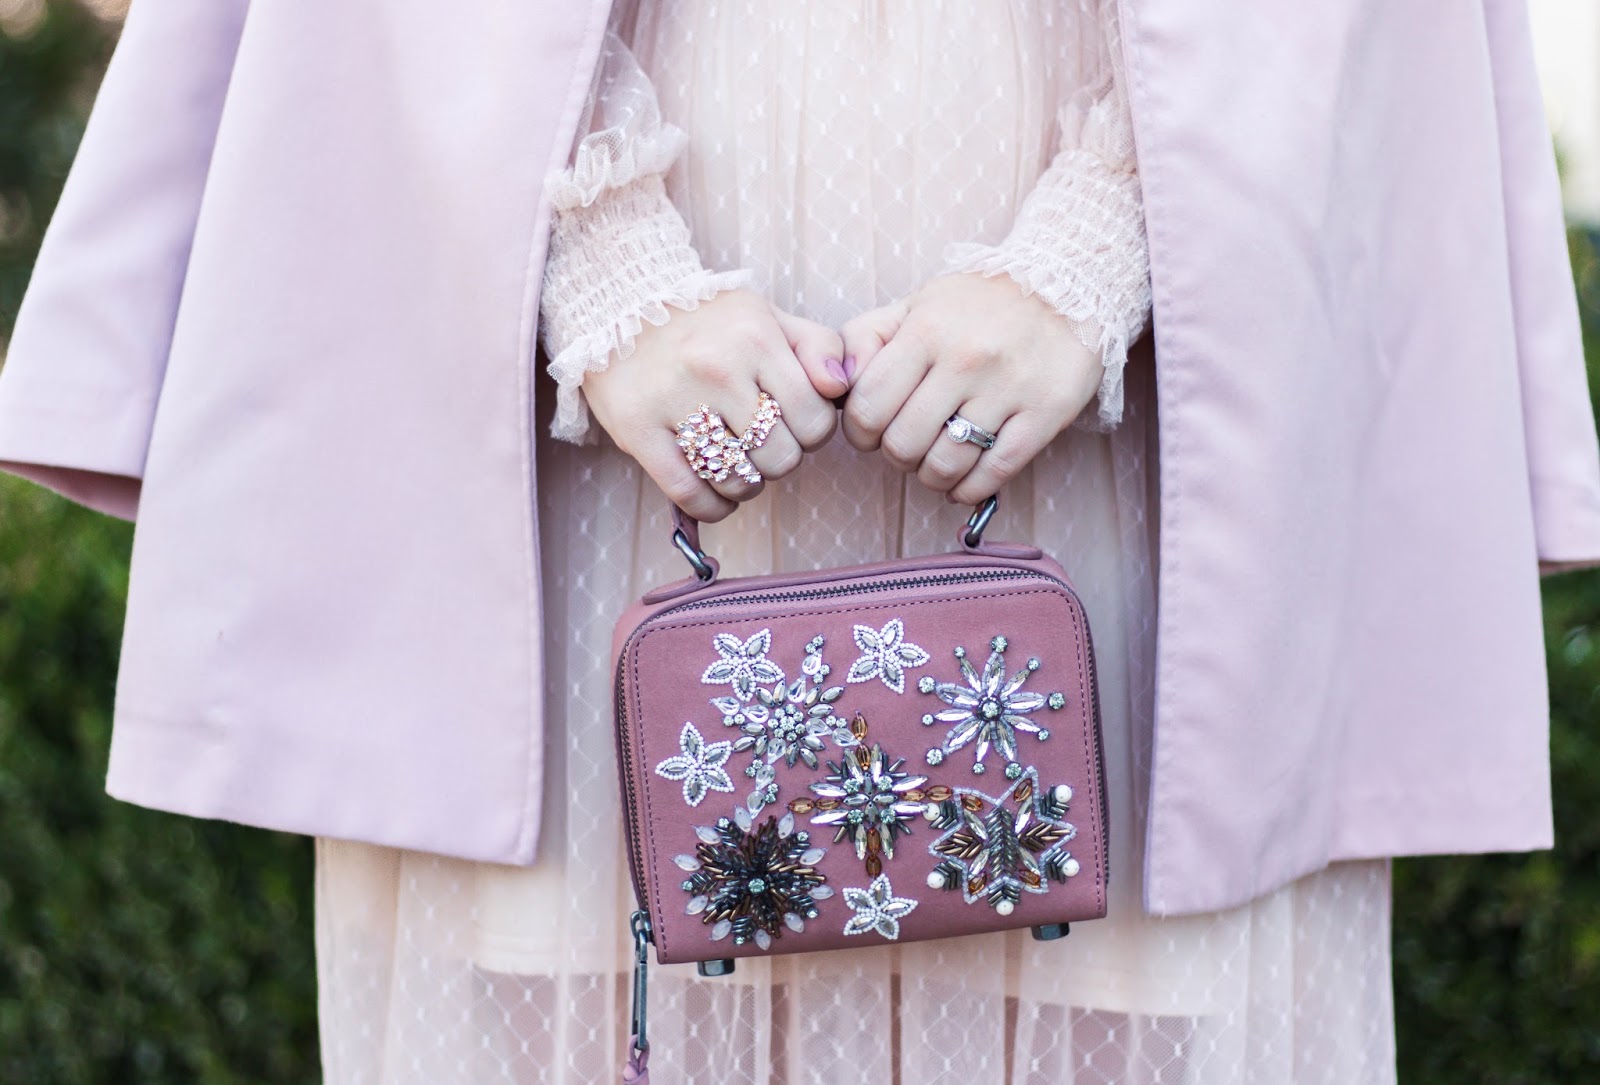 Rebecca minkoff embellished handbag